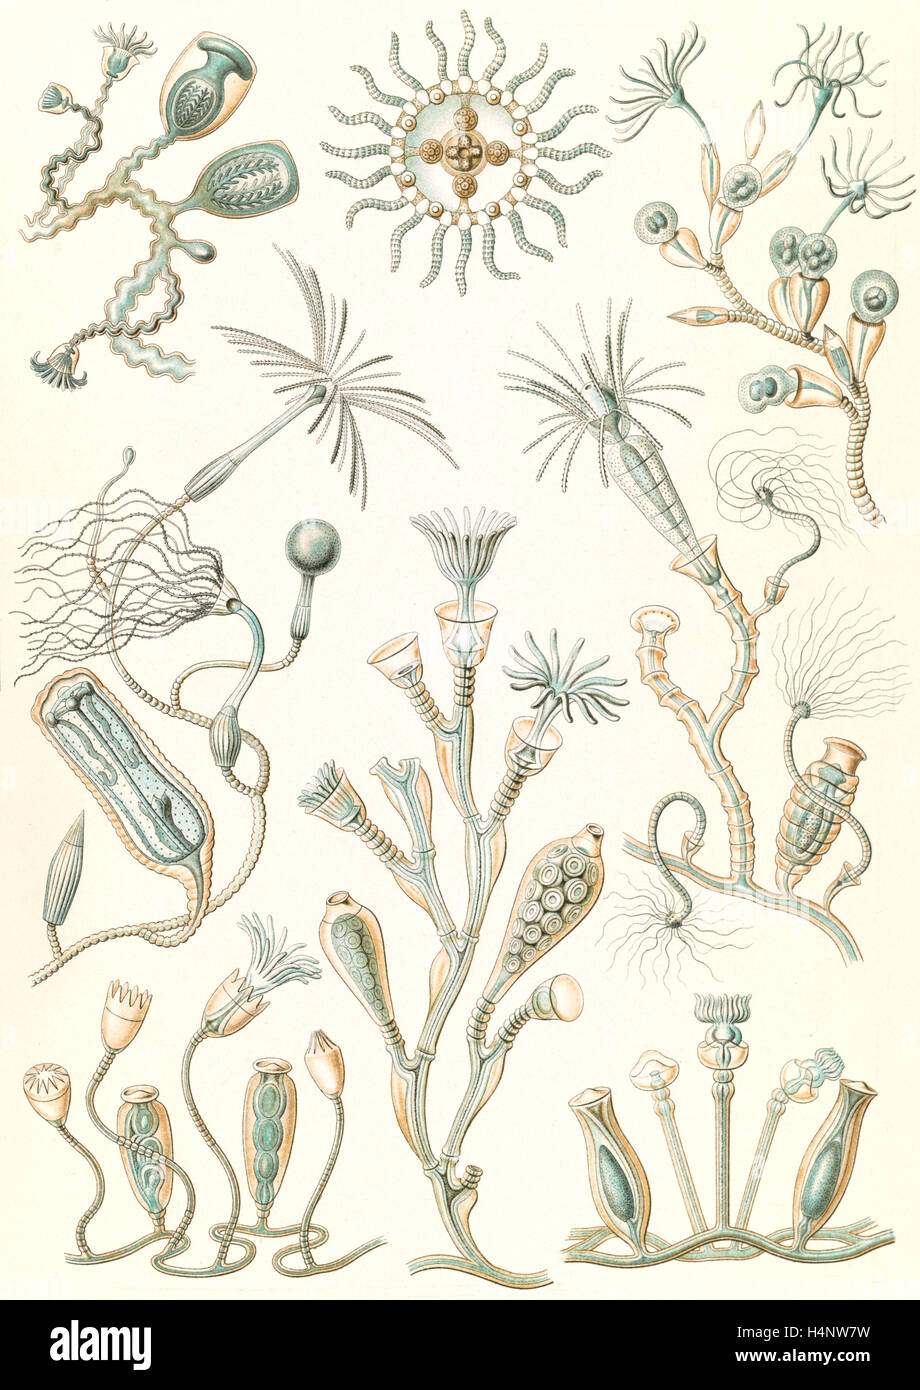 La figura mostra gli animali acquatici. Campanariae. - Glockenpolnpen, 1 stampa : Litografia a colori ; foglio 36 x 26 cm., 1904. Foto Stock